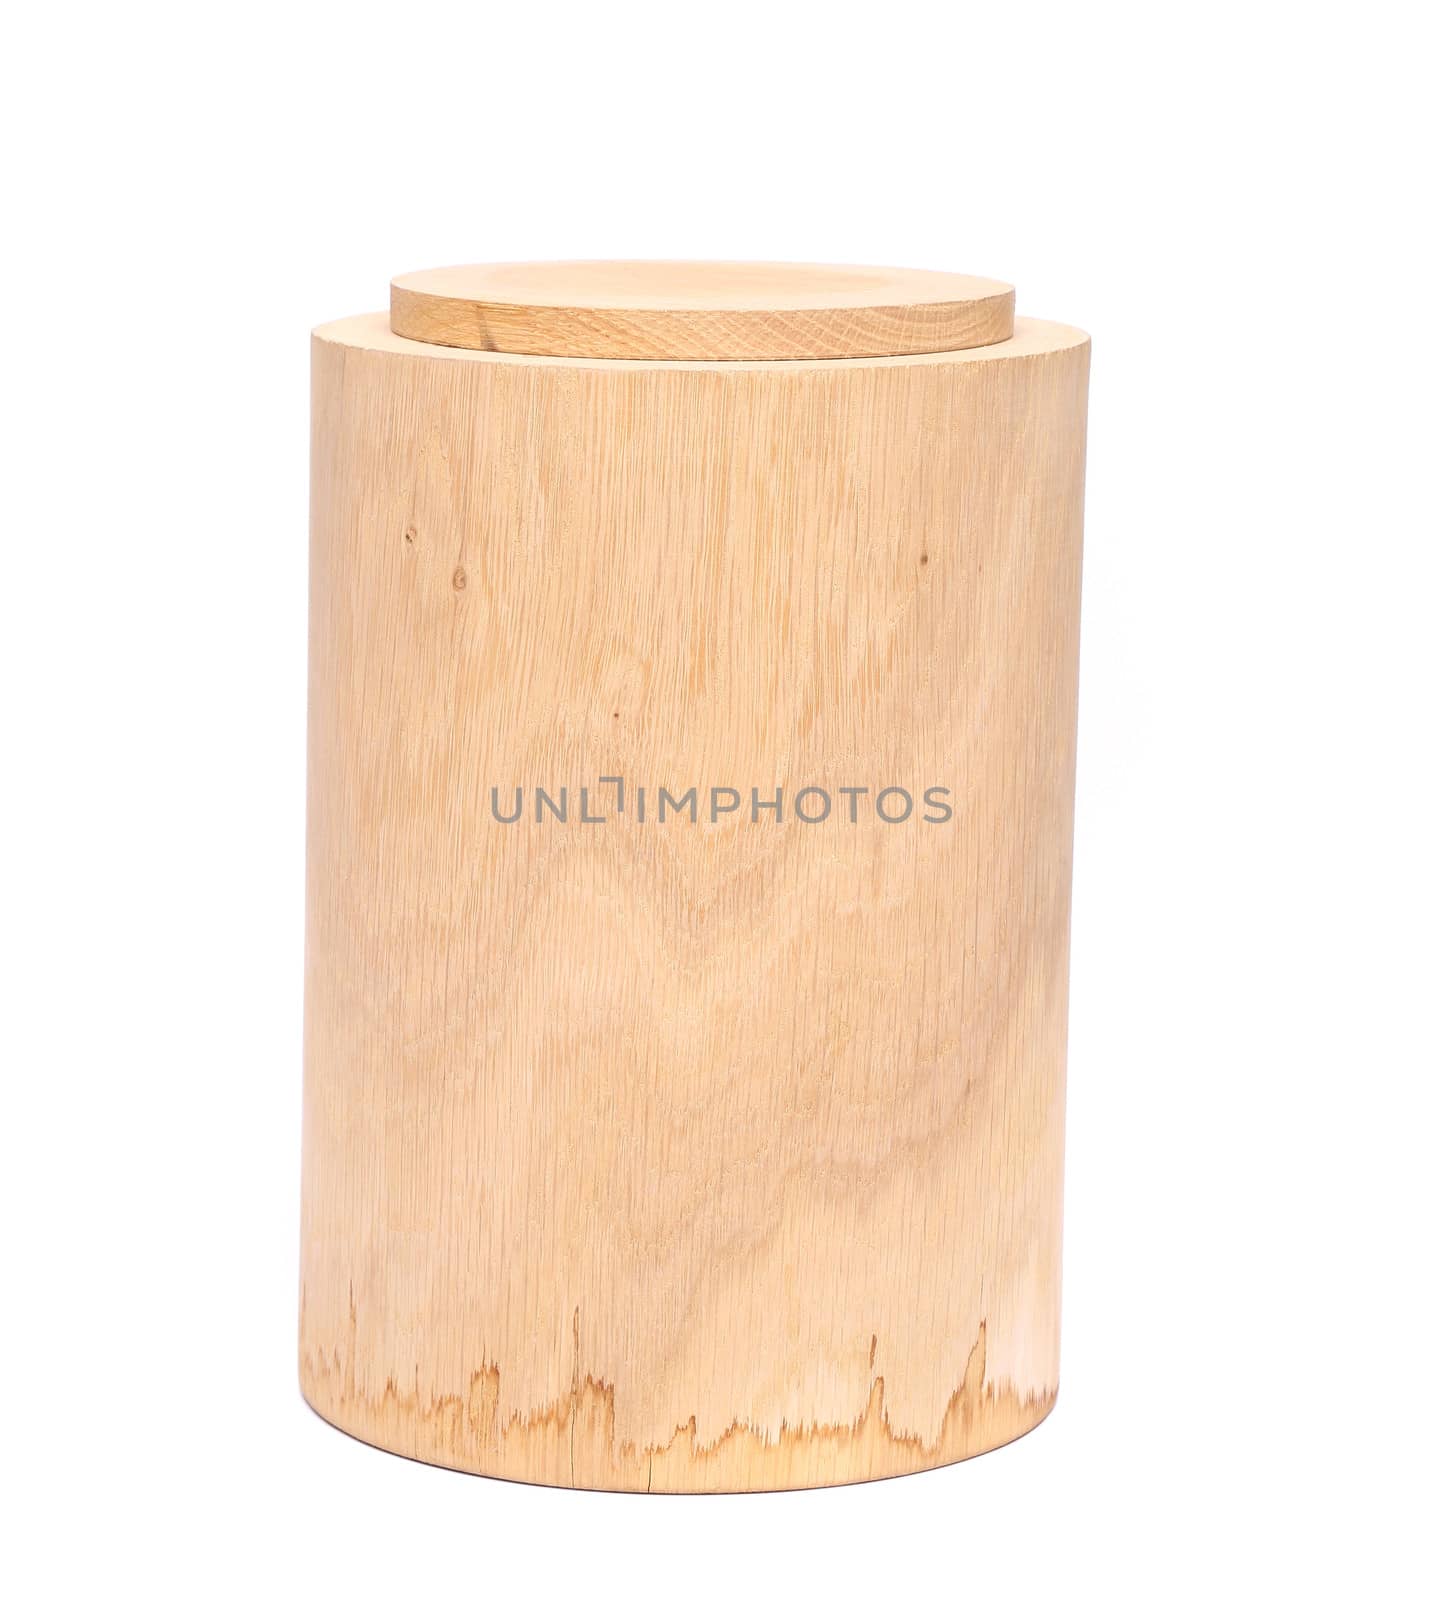 Birch bark container by indigolotos